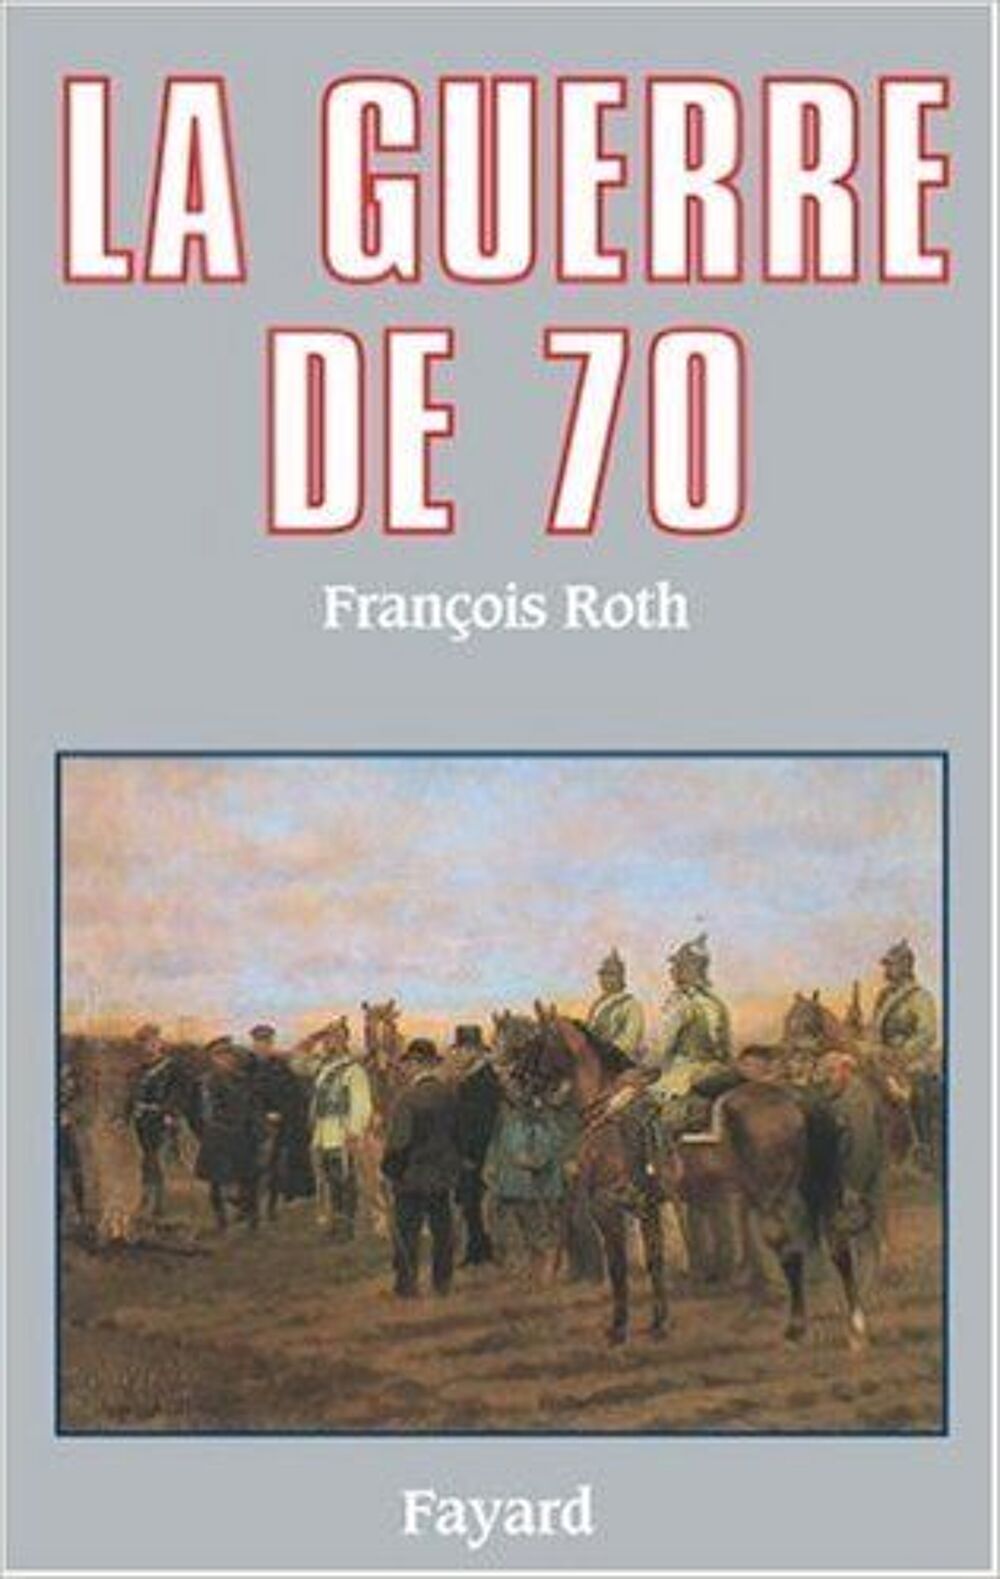 La guerre de 70 de J. Fayard Livres et BD